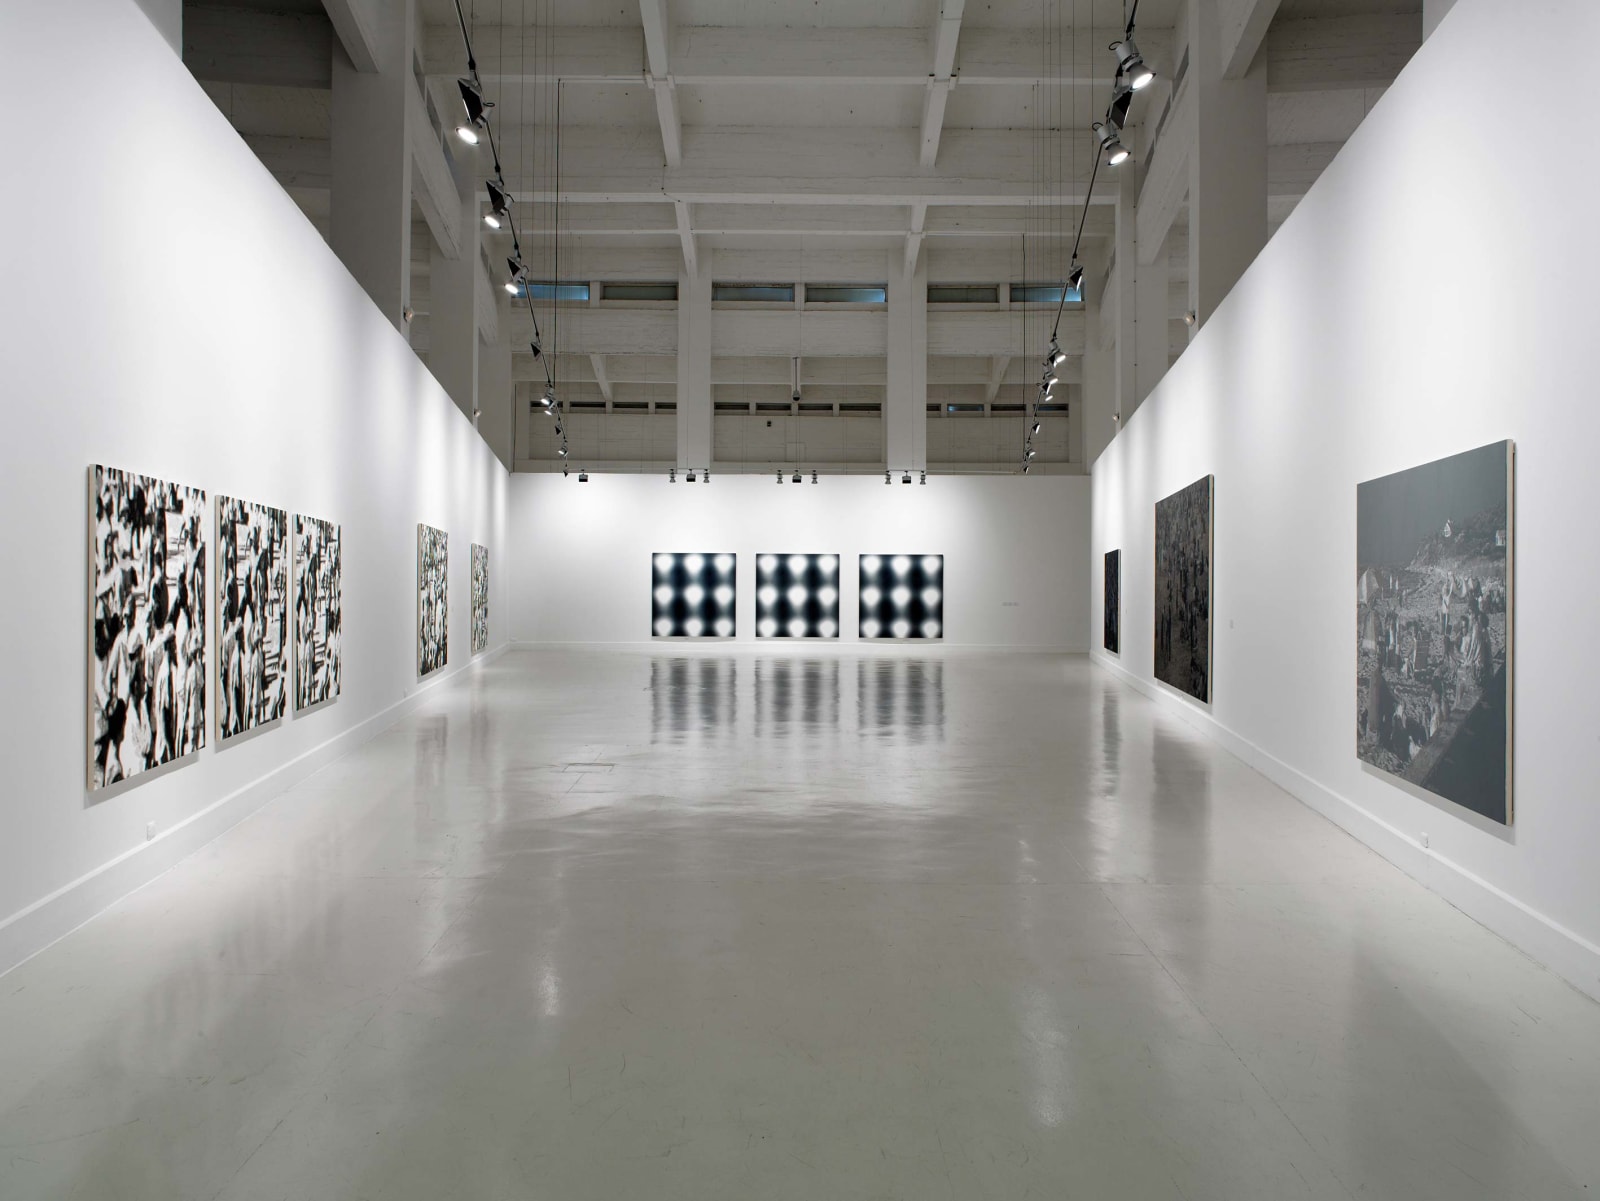 <p>Installation view: Wayne Gonzales, CAC Malága, Malága (2011).</p>